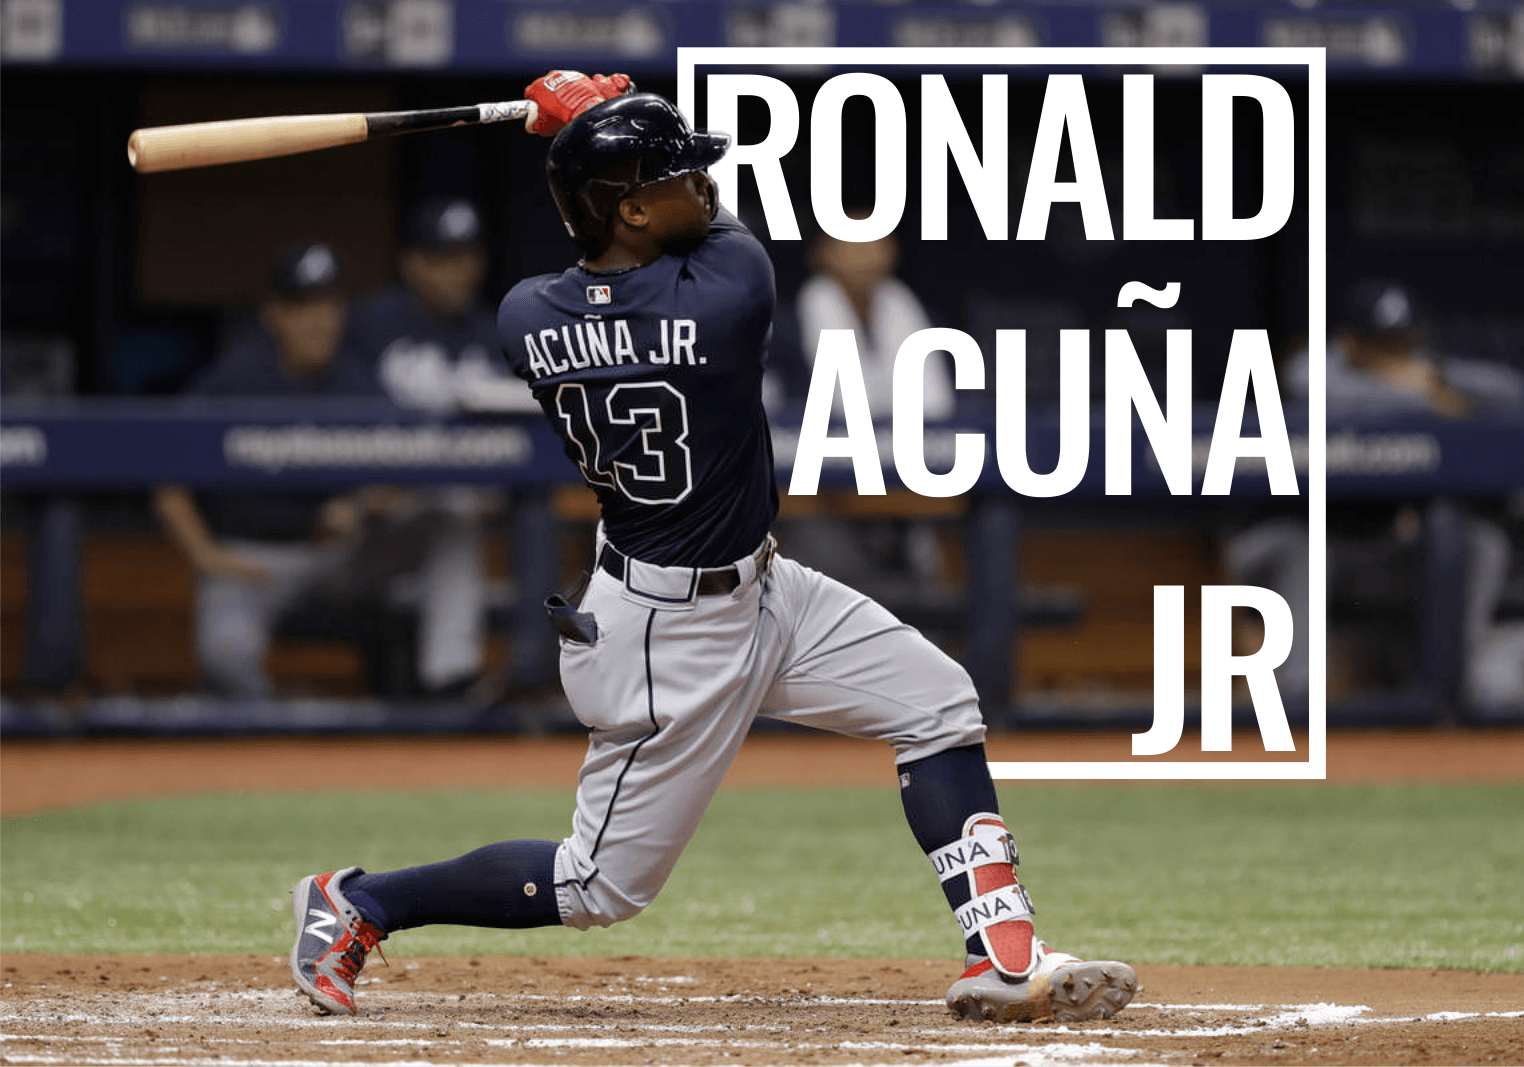 Ronald Acuna Jr Wallpaper  iXpap  Atlanta braves wallpaper Nba fashion  Atlanta braves baseball